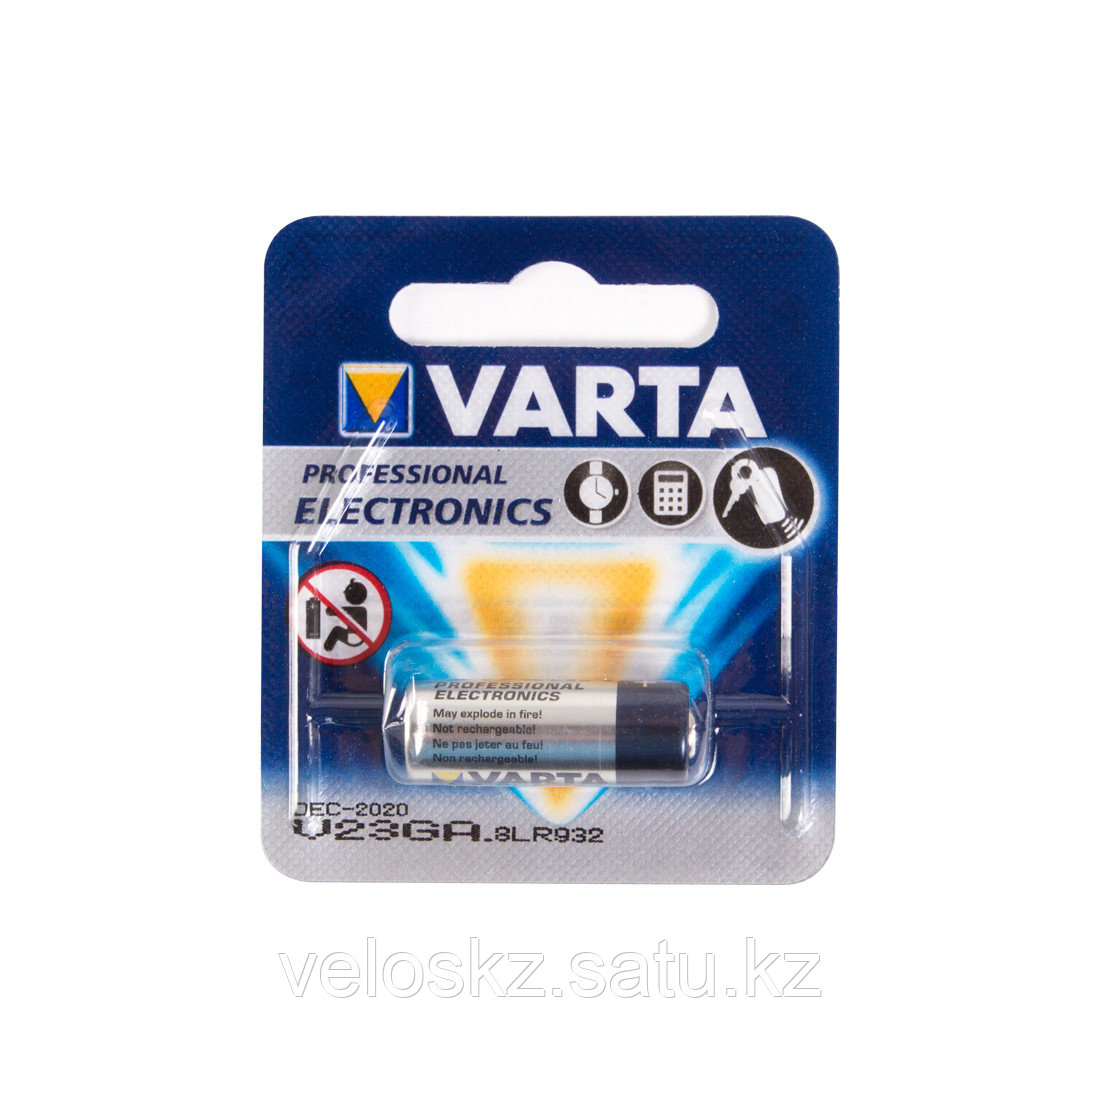 Varta Батарейка, VARTA, V23GA - 8LR932, Lithium, 12V, 1 шт.